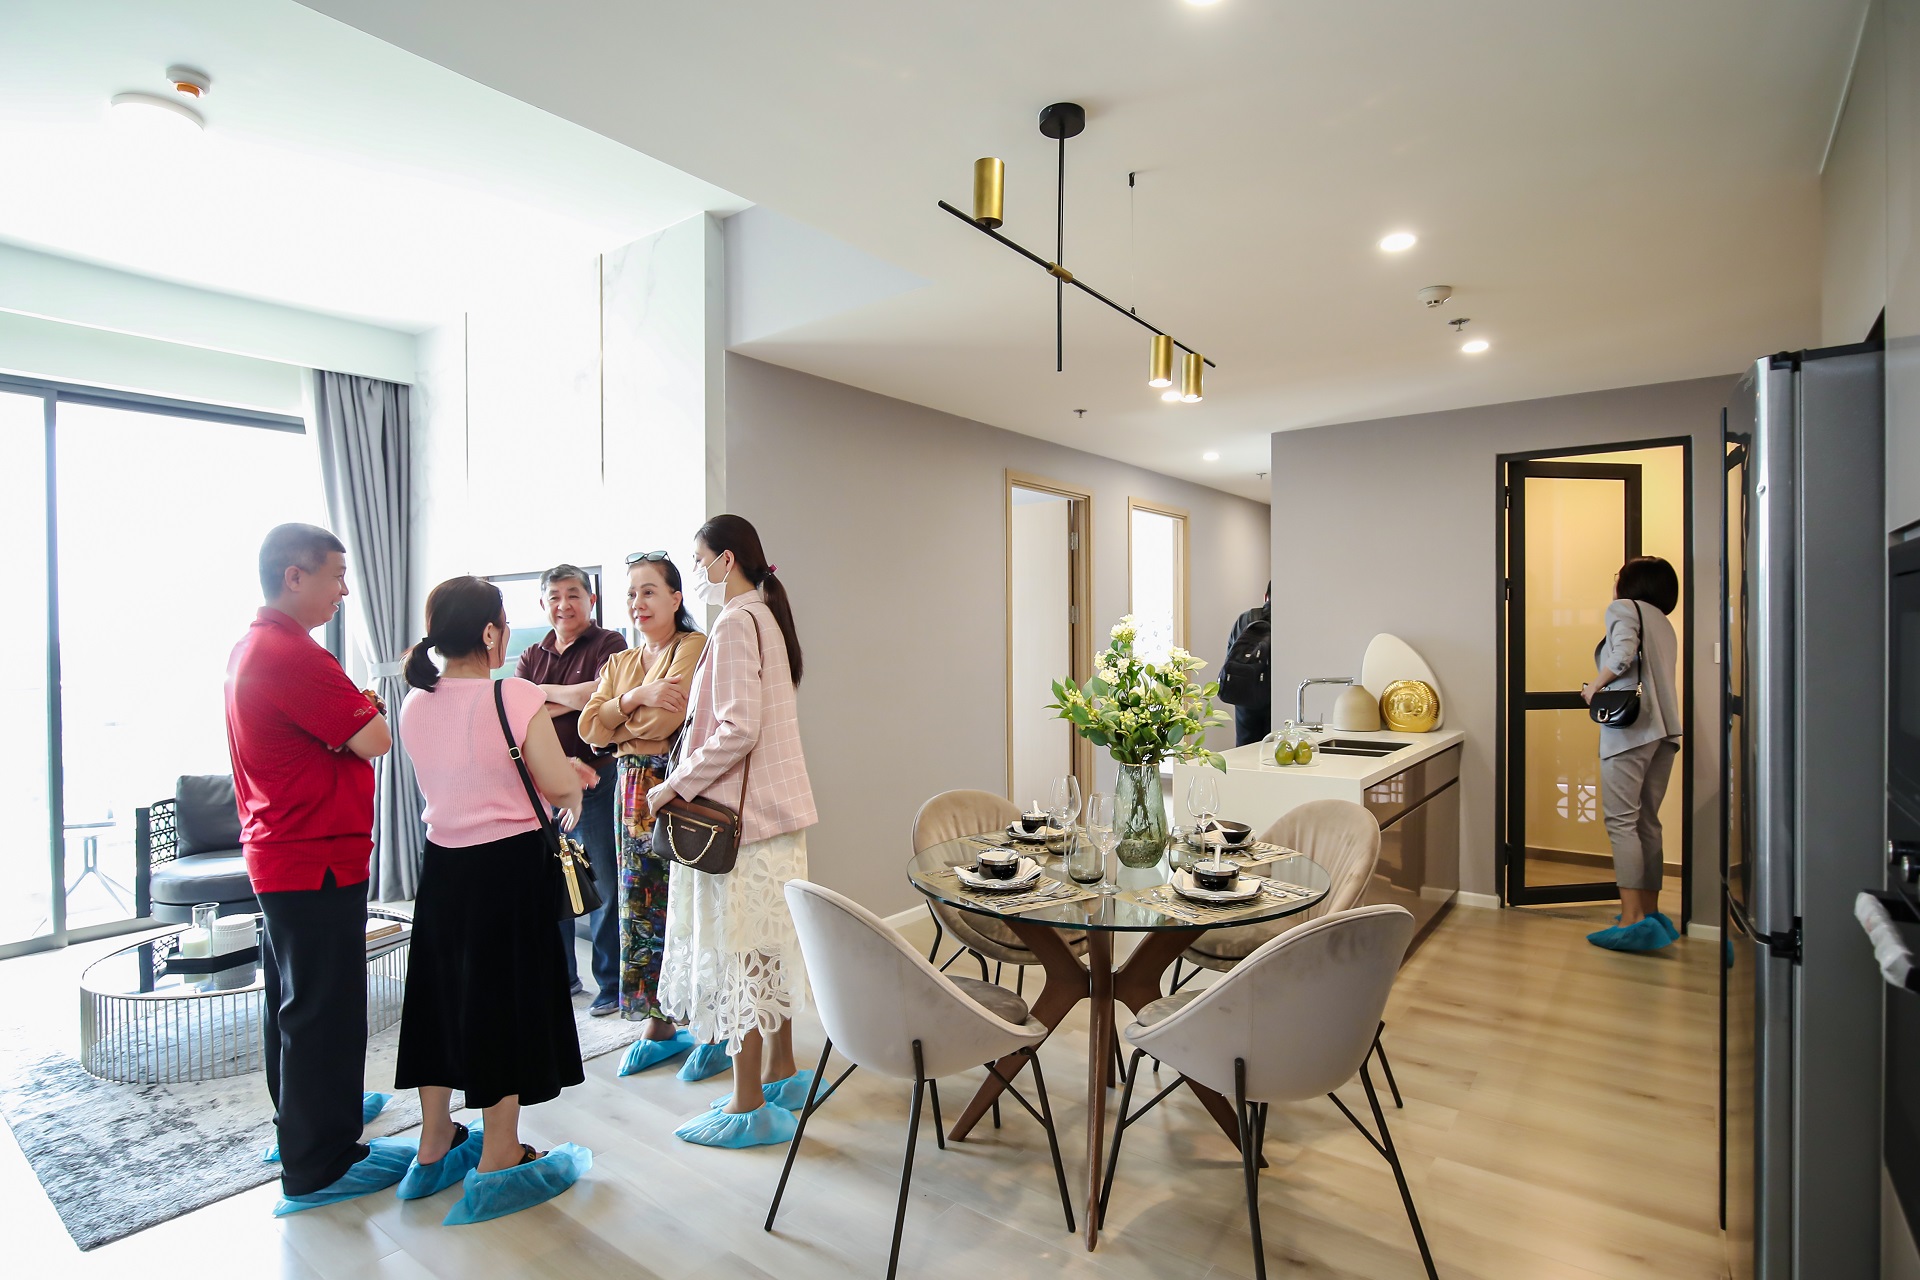 Hàng ngàn khách hàng trải nghiệm căn hộ thực tế tại khu compound cao cấp nhất khu Đông TPHCM